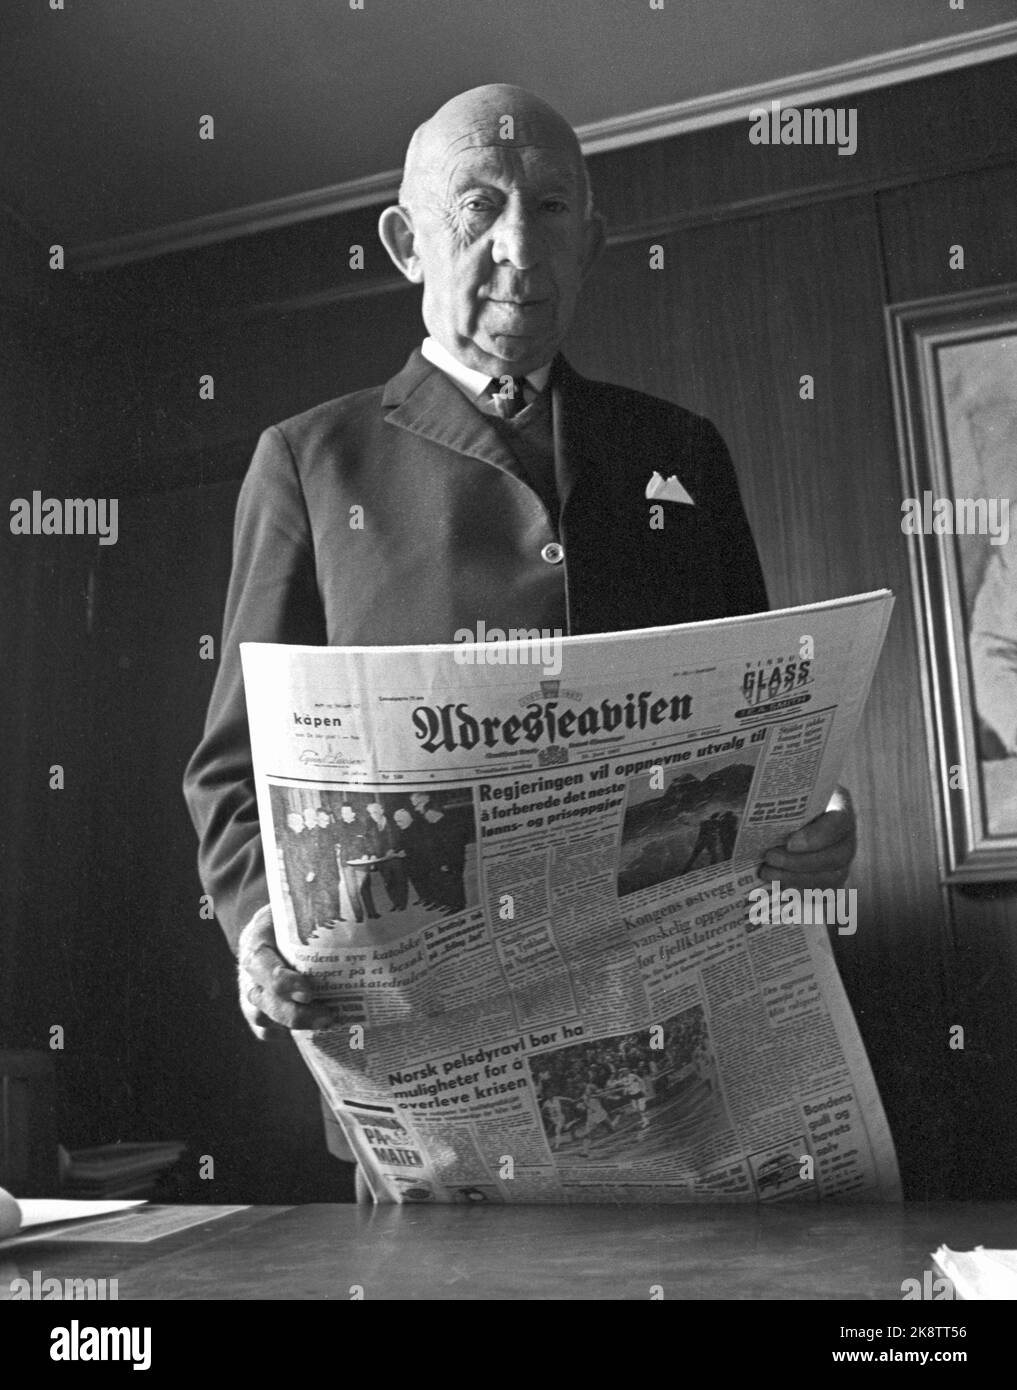 Trondheim 19670601: Adresseavisen "Adressa" ist Norwegens älteste Zeitung. 1967 wurde die Zeitung 200 Jahre alt. Hier Herausgeber Harald Torp im Jahr 1967. Foto: Current / NTB Stockfoto